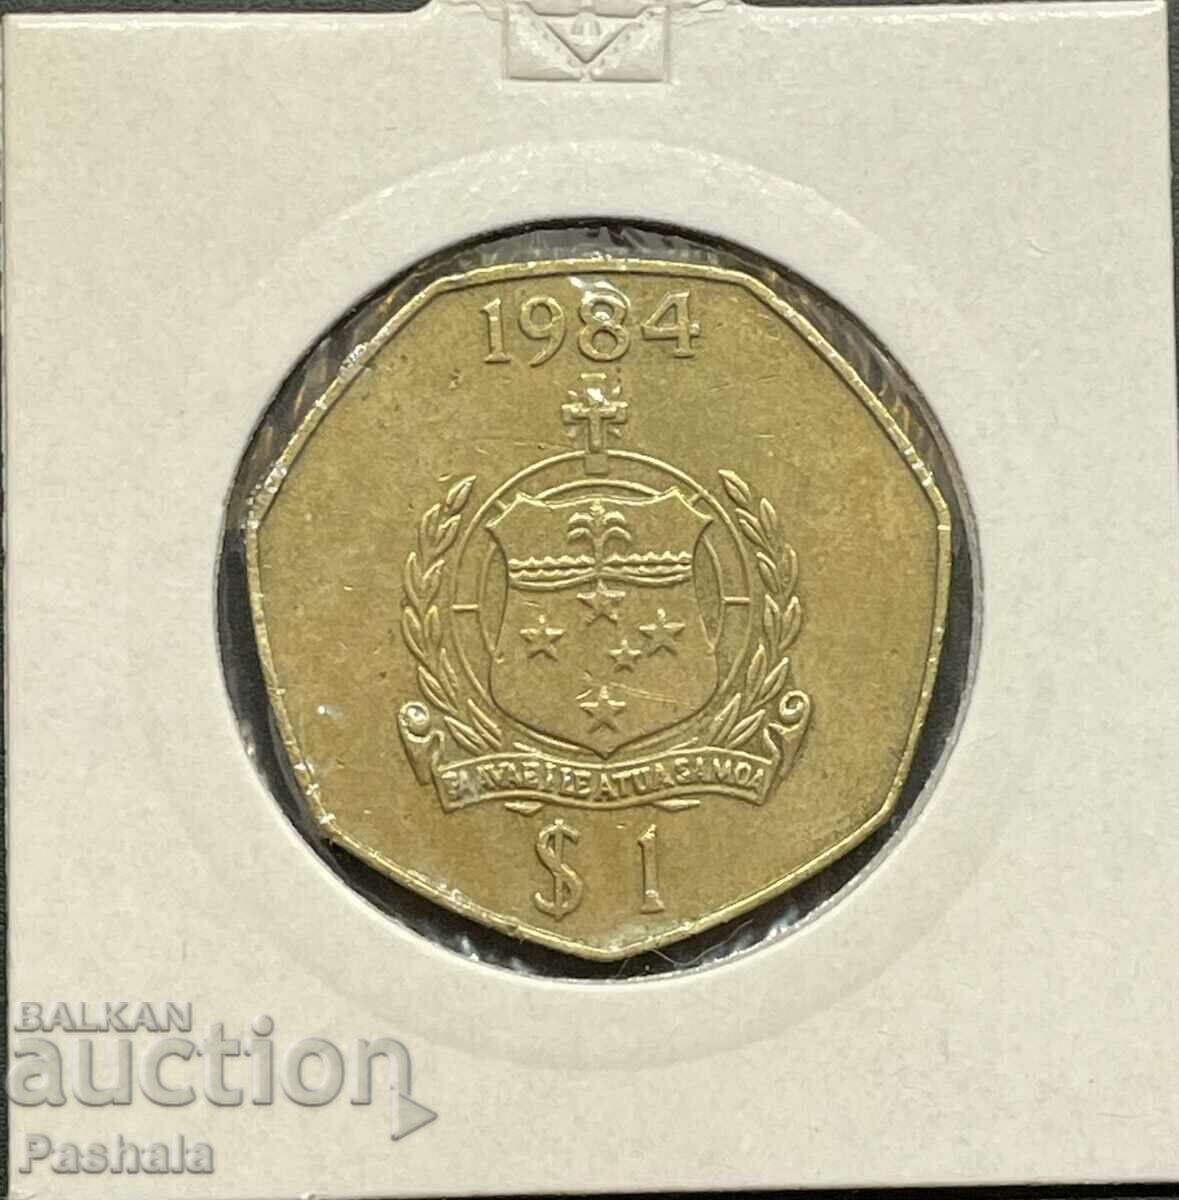 Samoa 1 dollar 1984